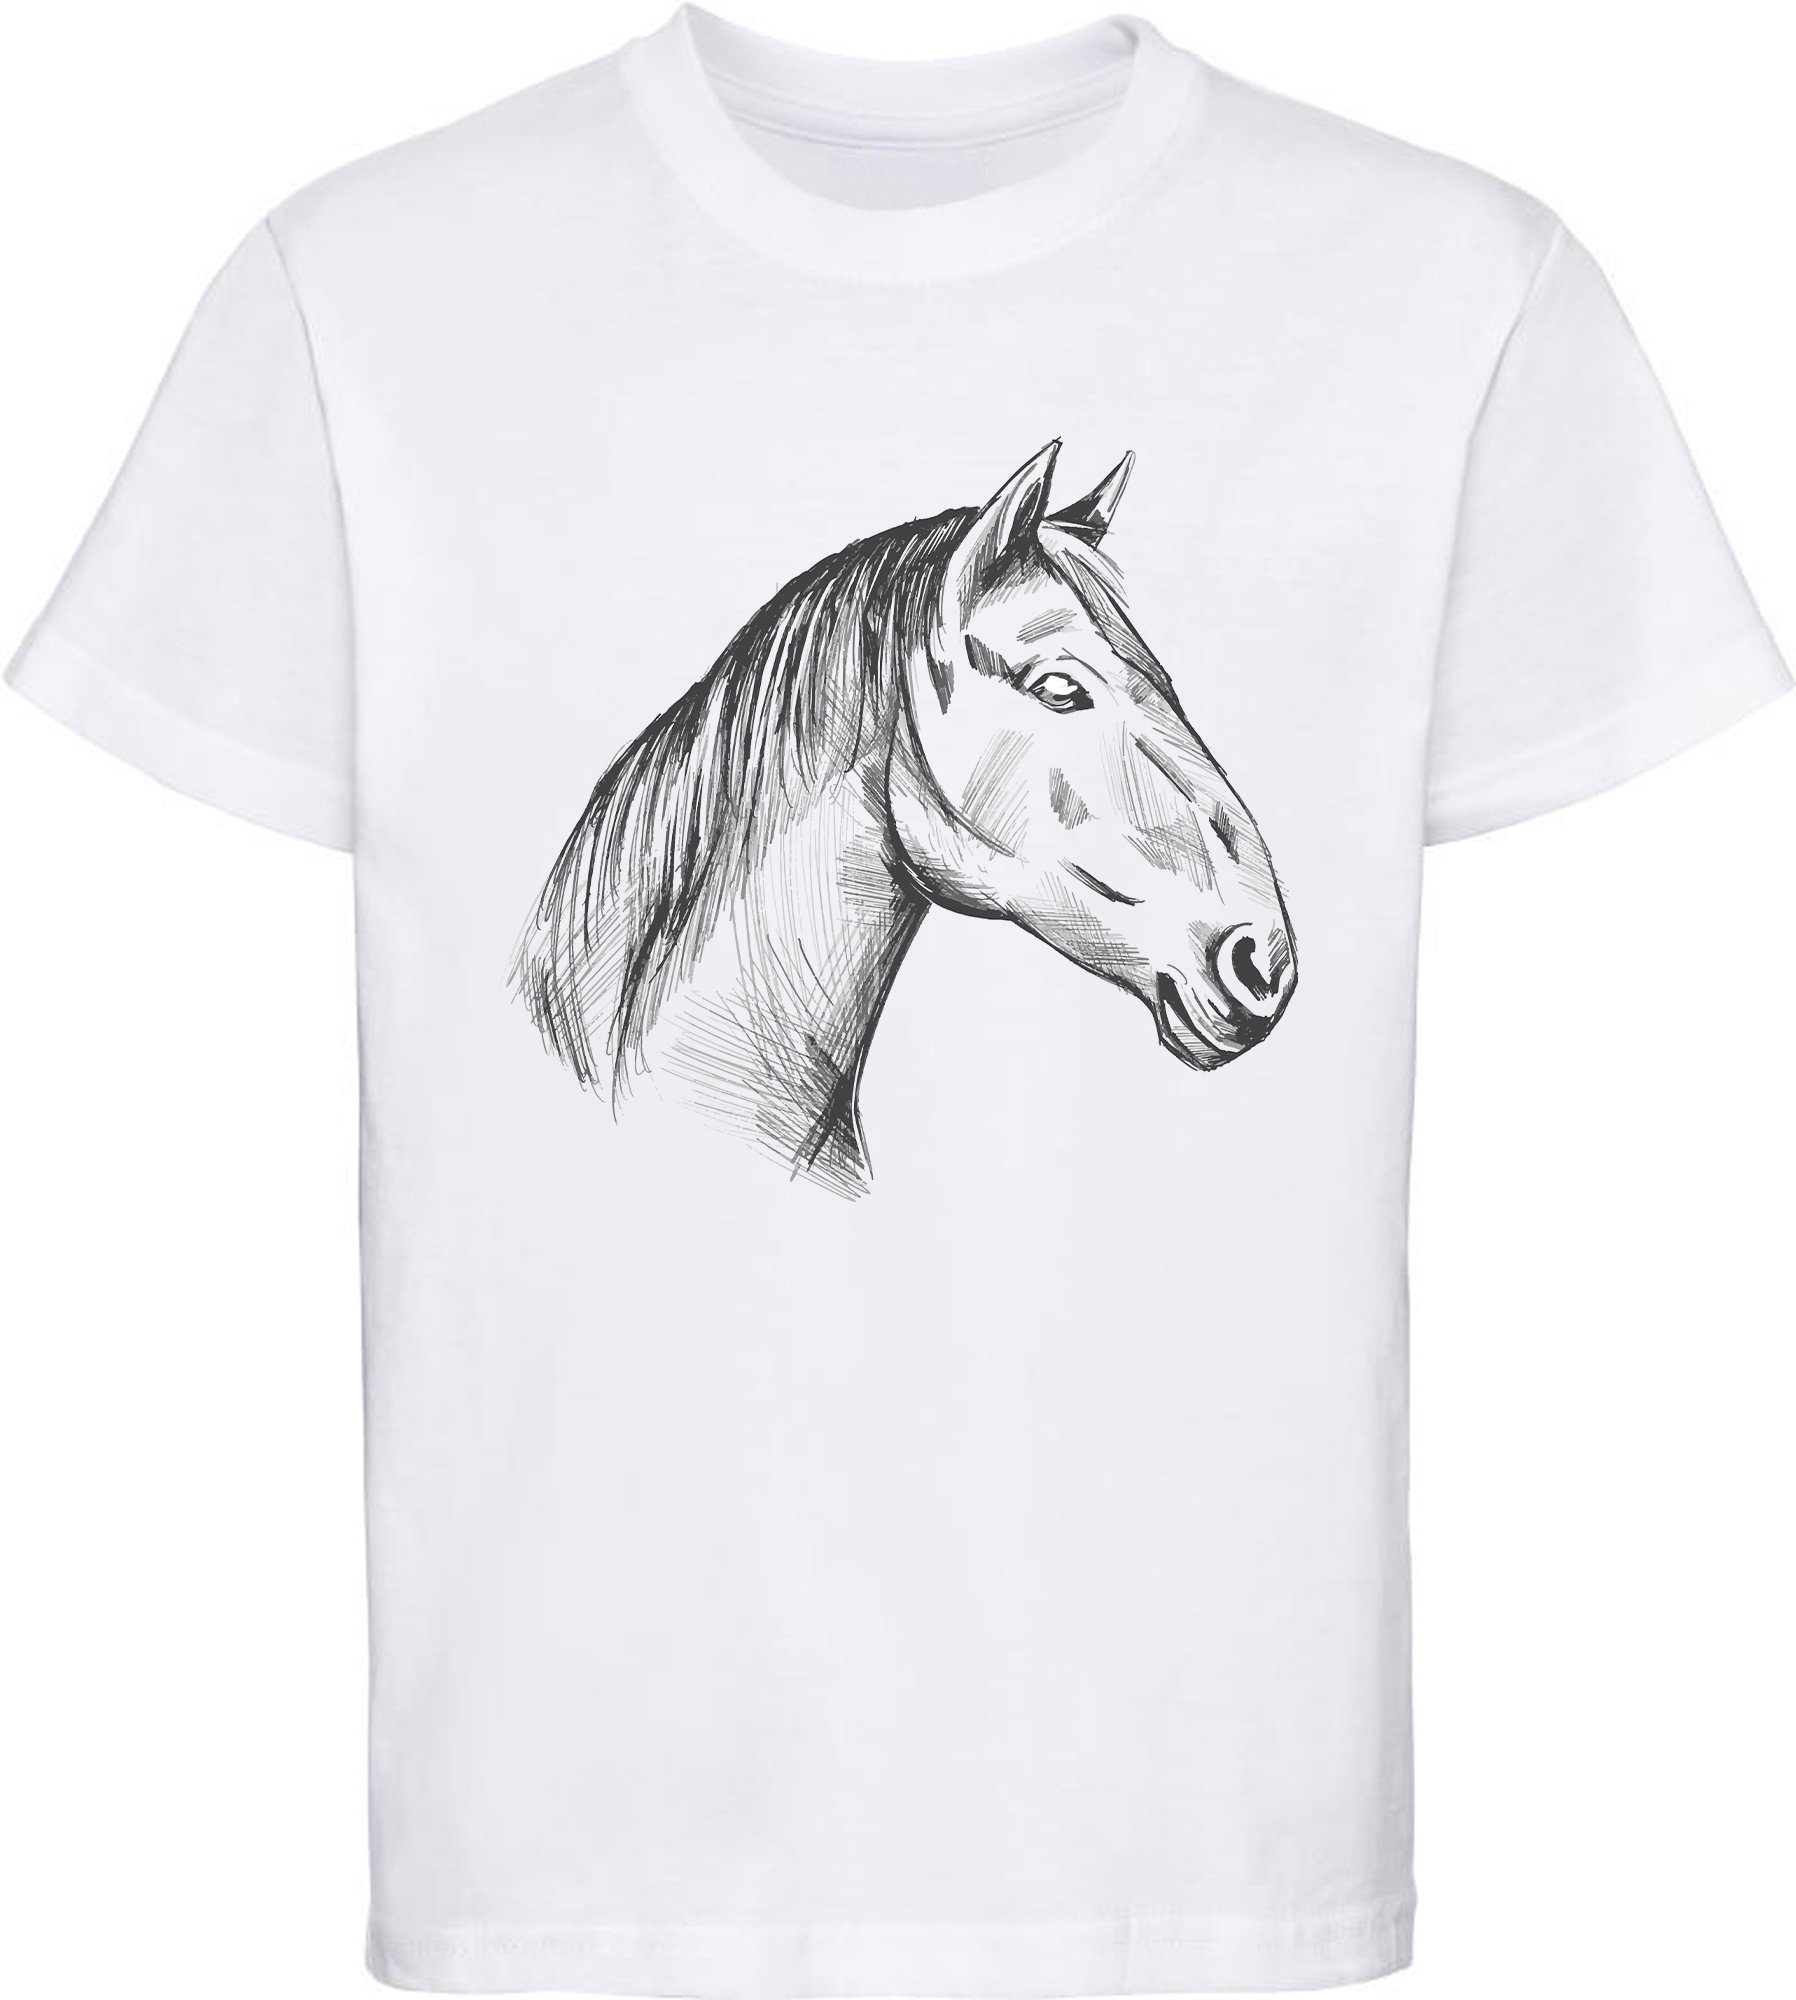 MyDesign24 Print-Shirt bedrucktes Mädchen T-Shirt gezeichneter Pferdekopf Baumwollshirt mit Aufdruck, i142 weiss